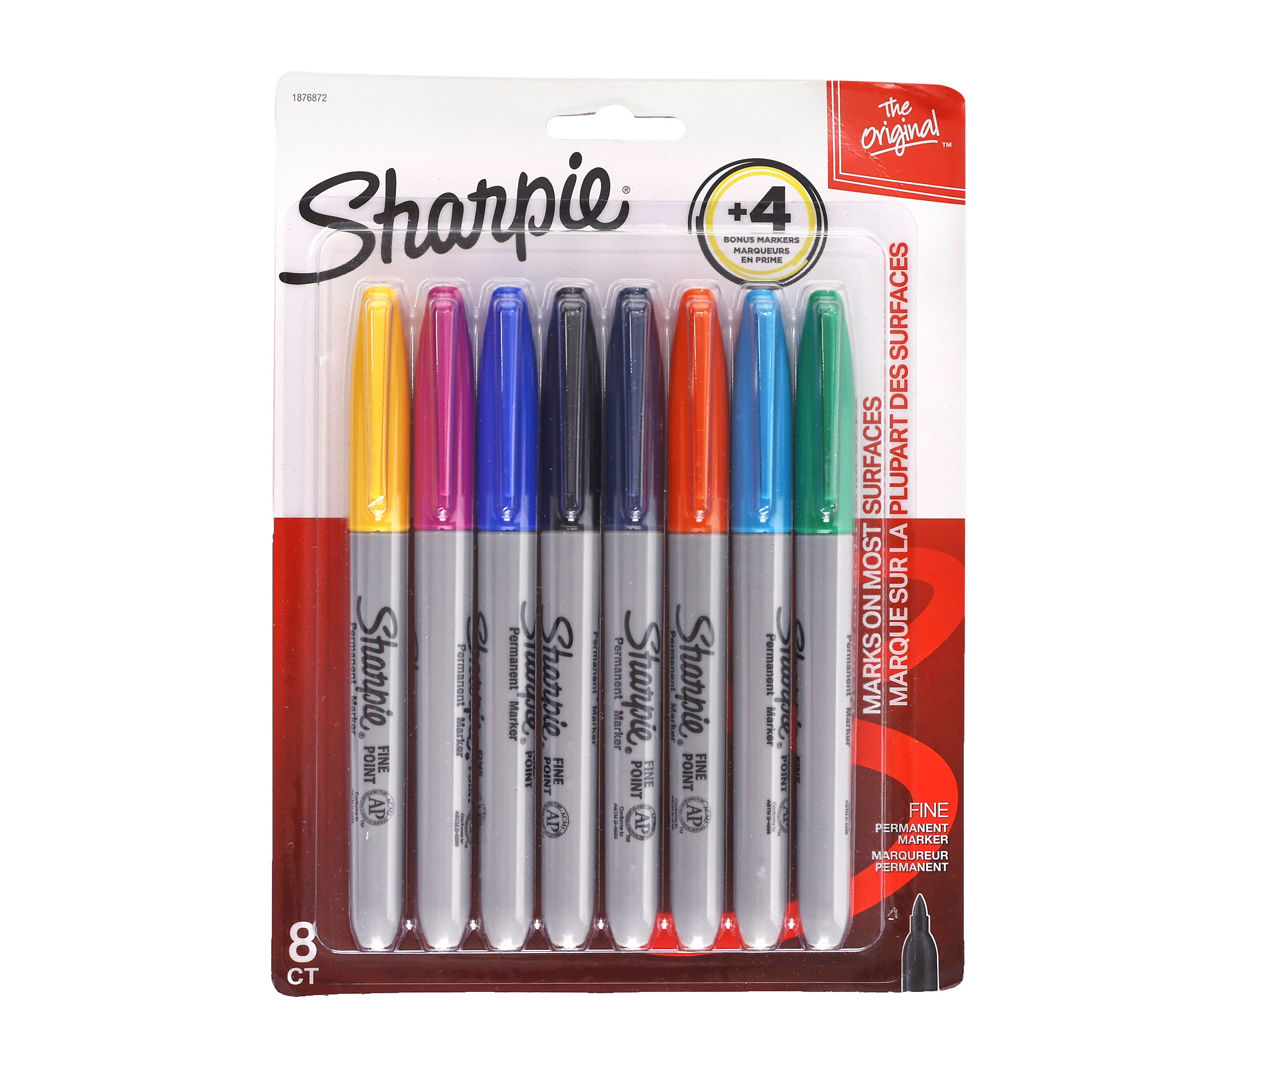 Sharpie Fine 8-Color Permanent Marker Set